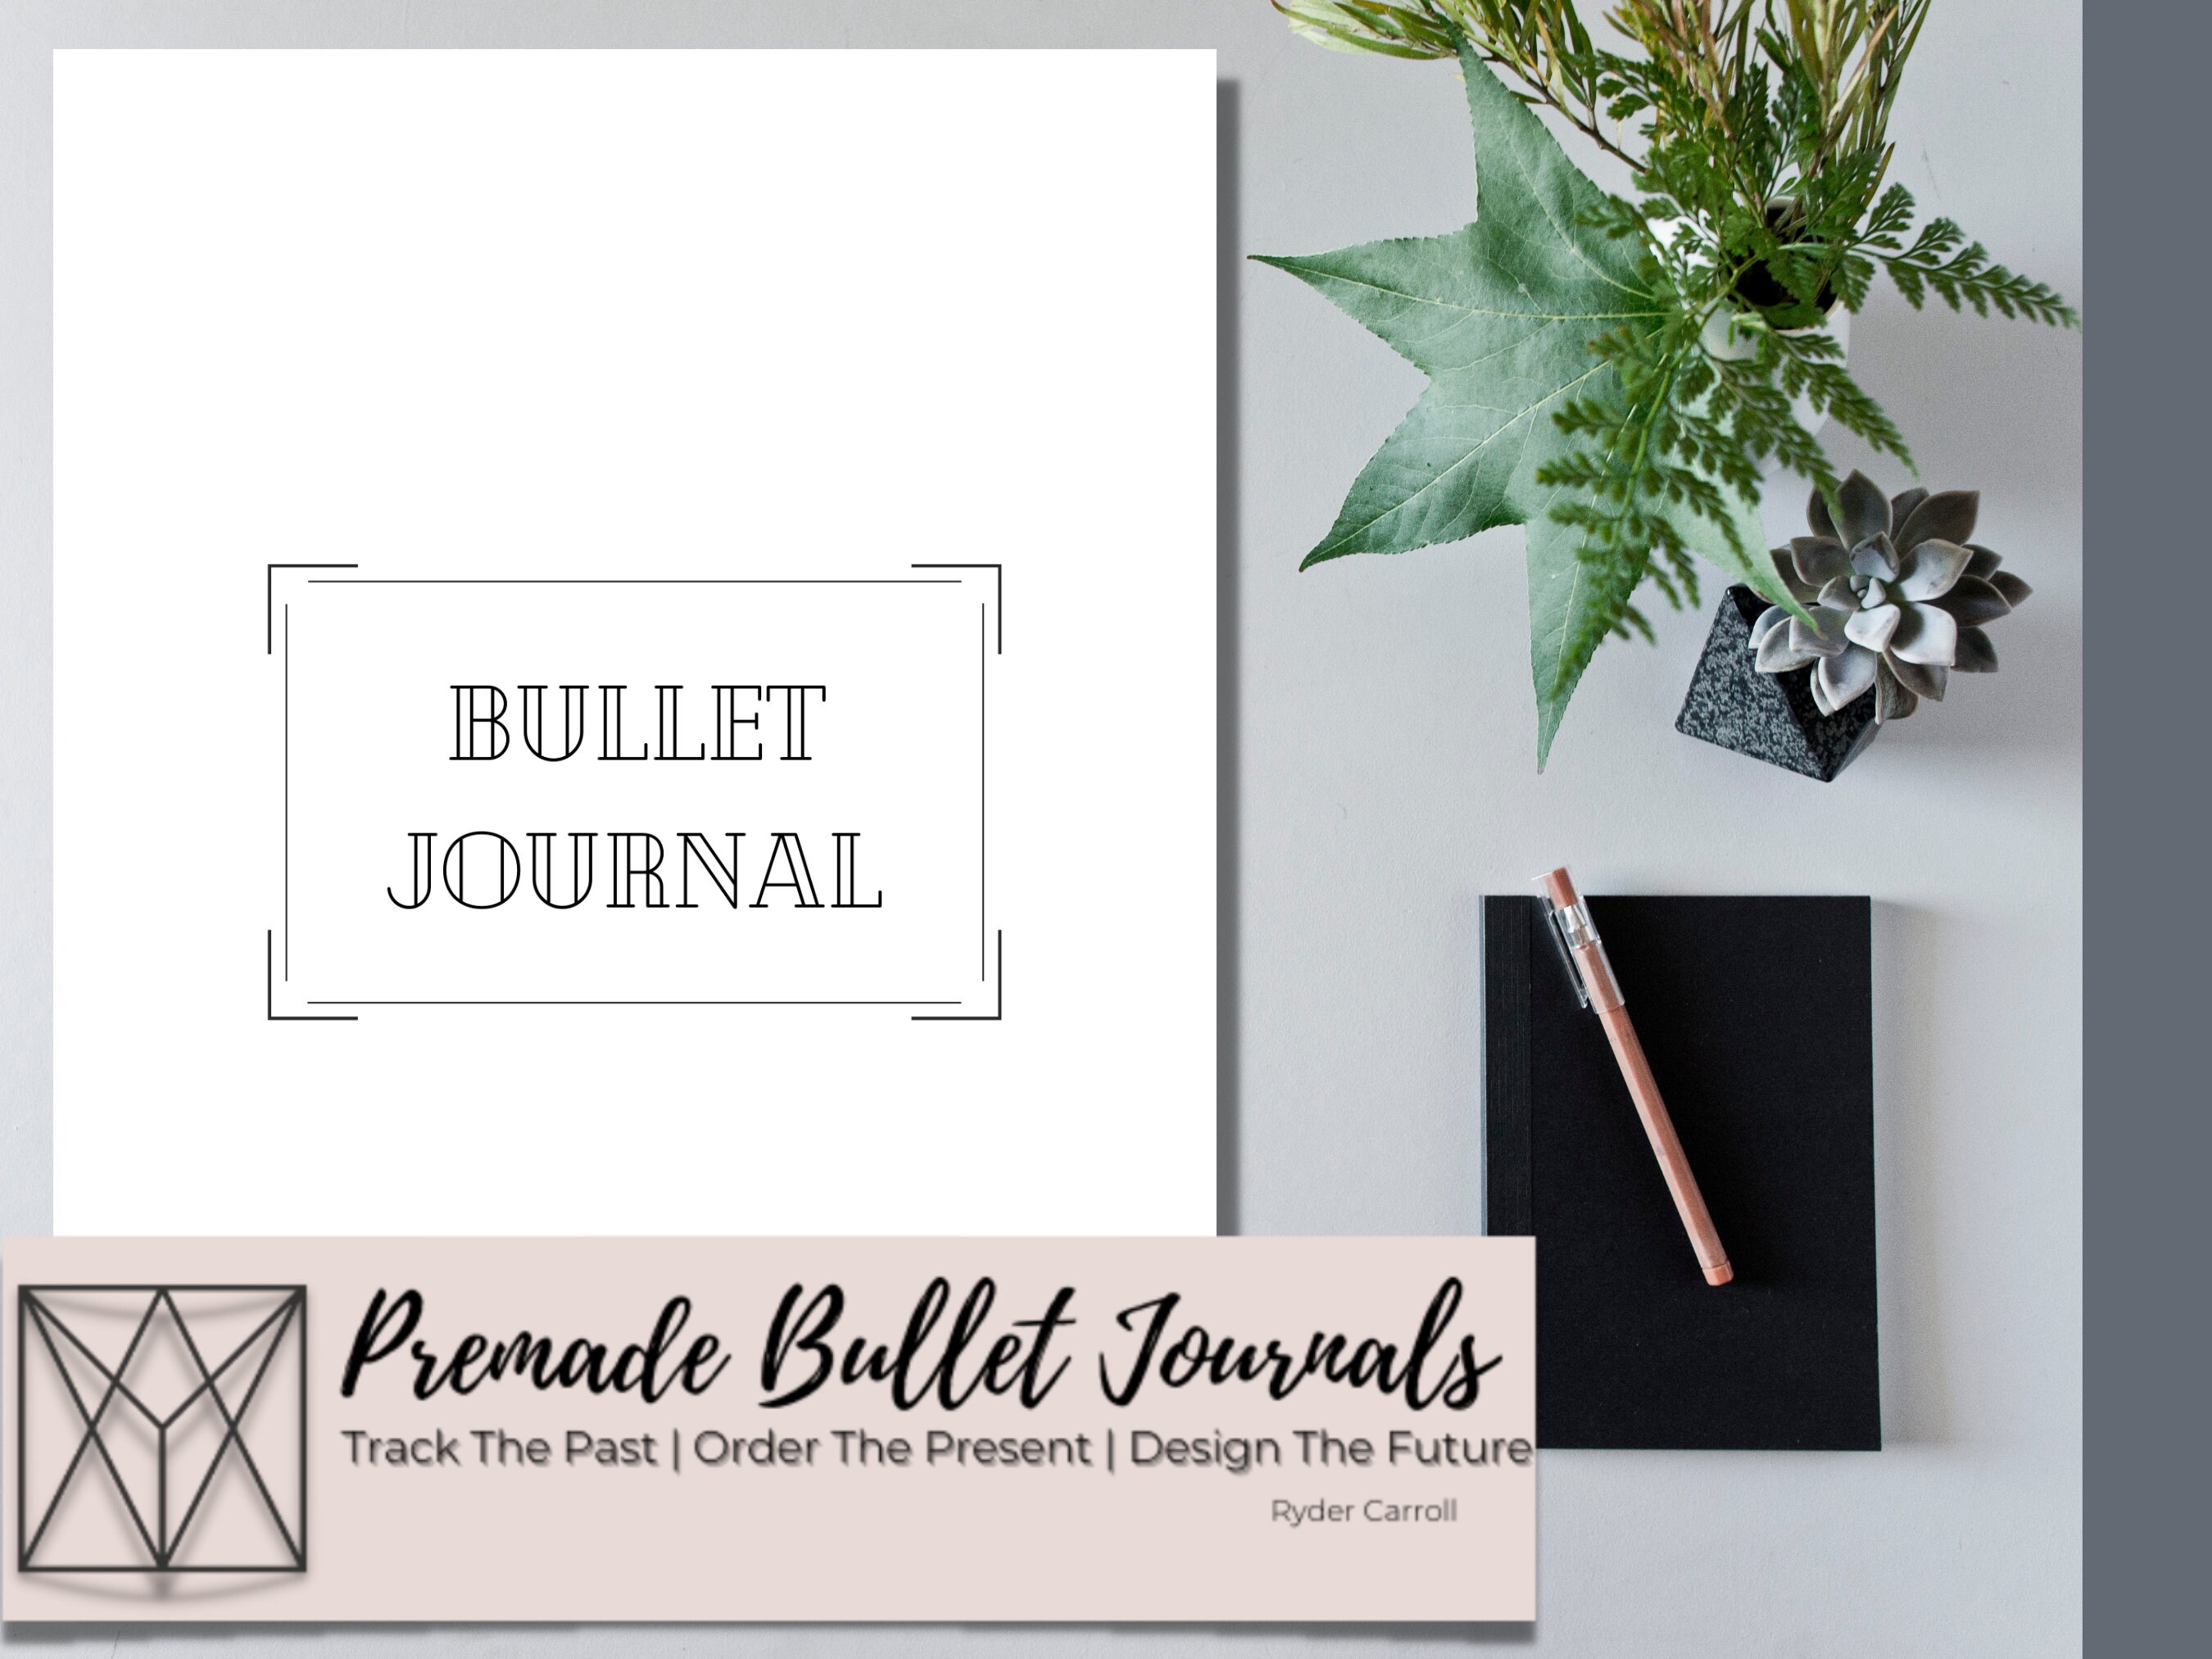 Premade Bullet Journal 